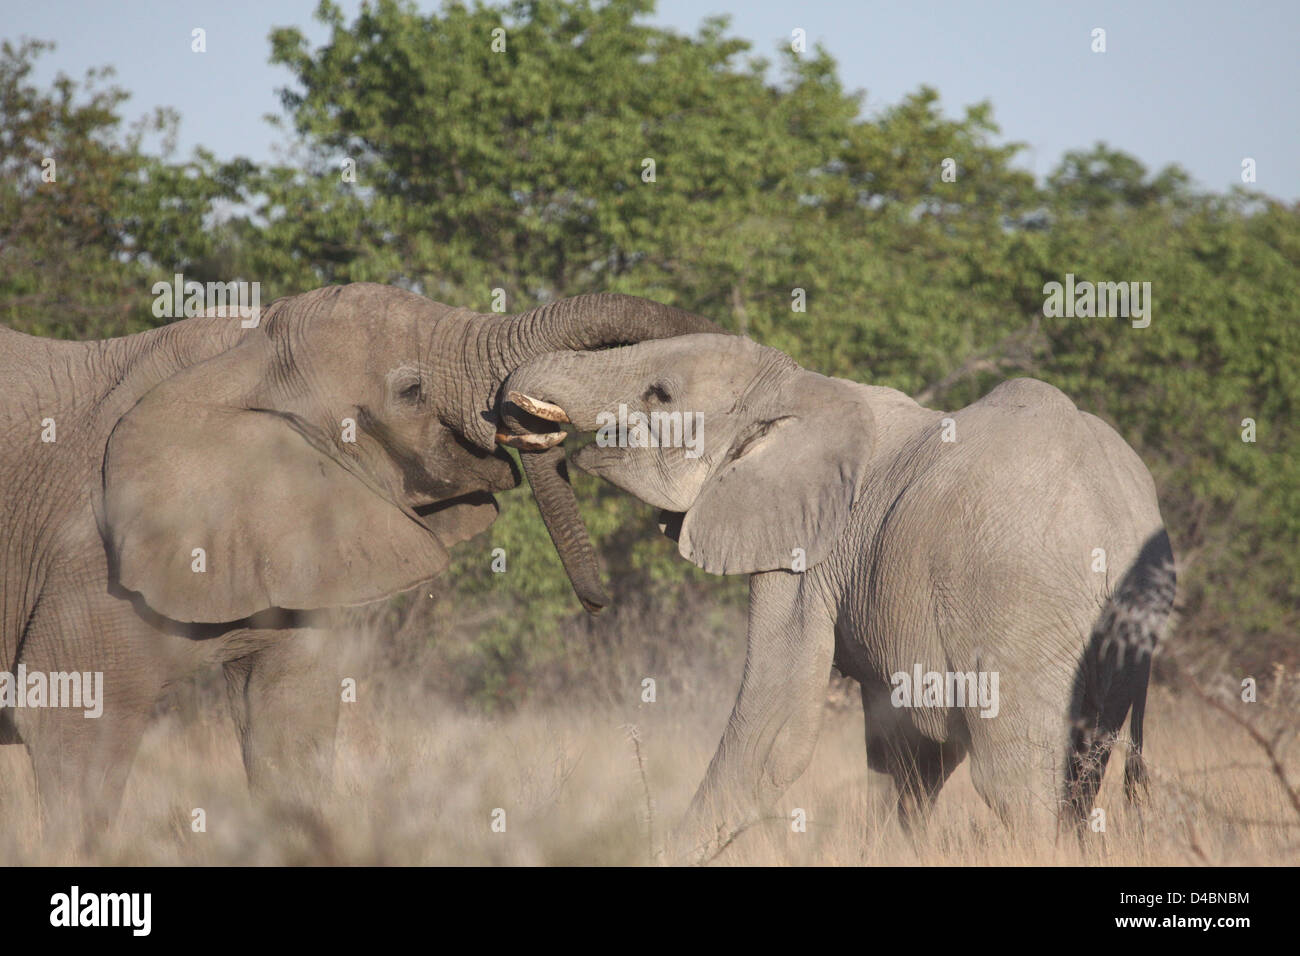 Elephants socialising, Etosha National Park, Namibia Stock Photo